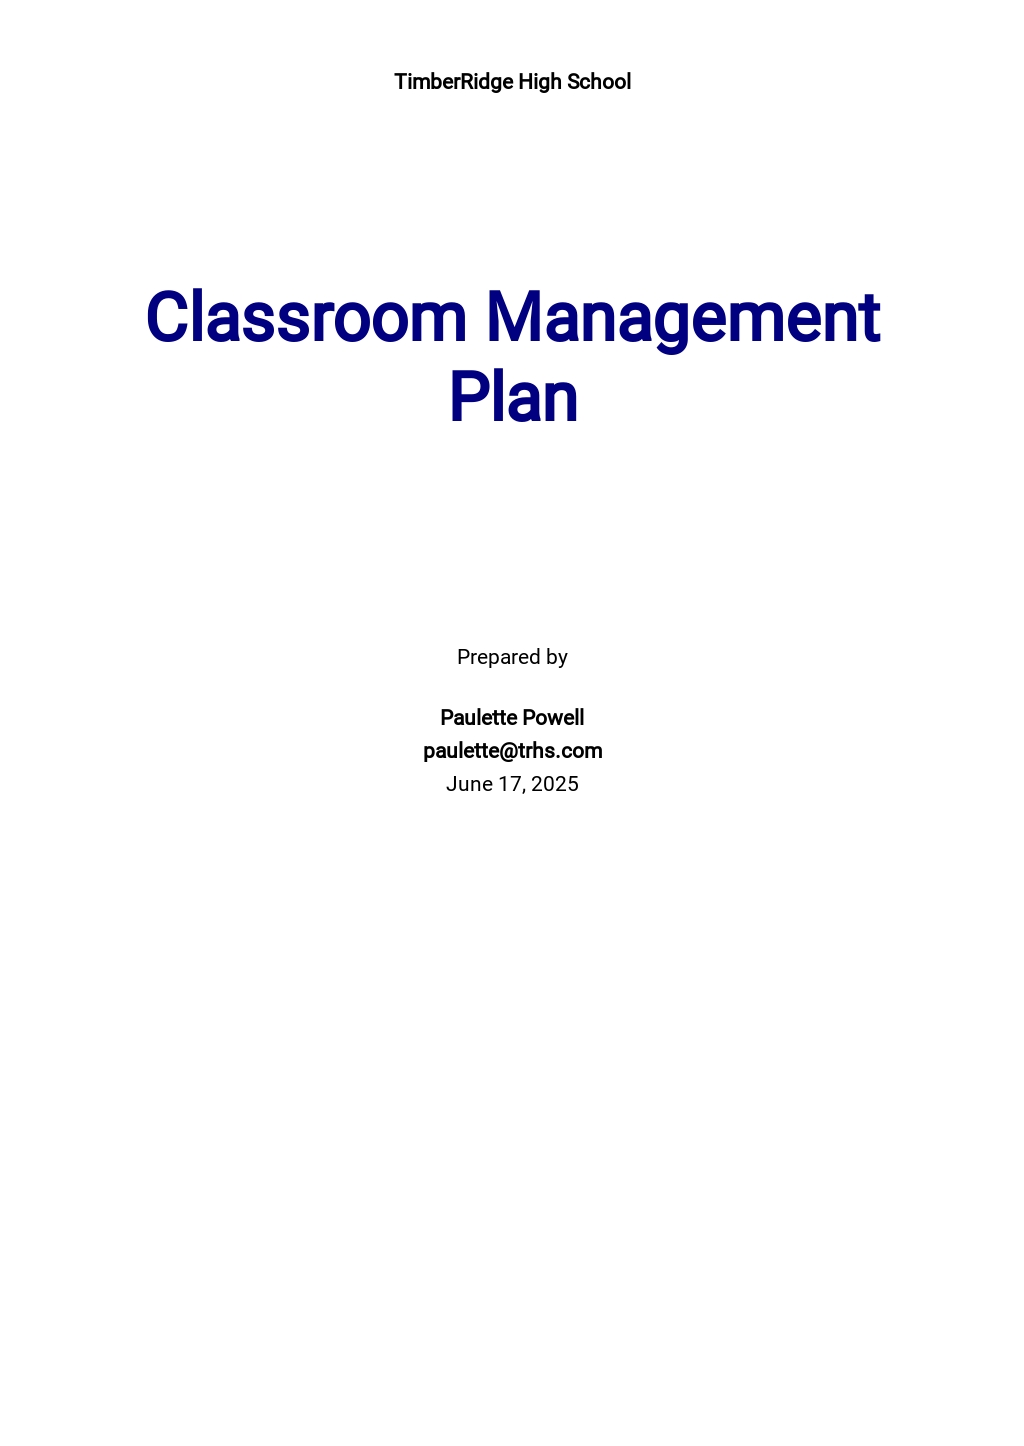 Classroom Management Plan Template.jpe